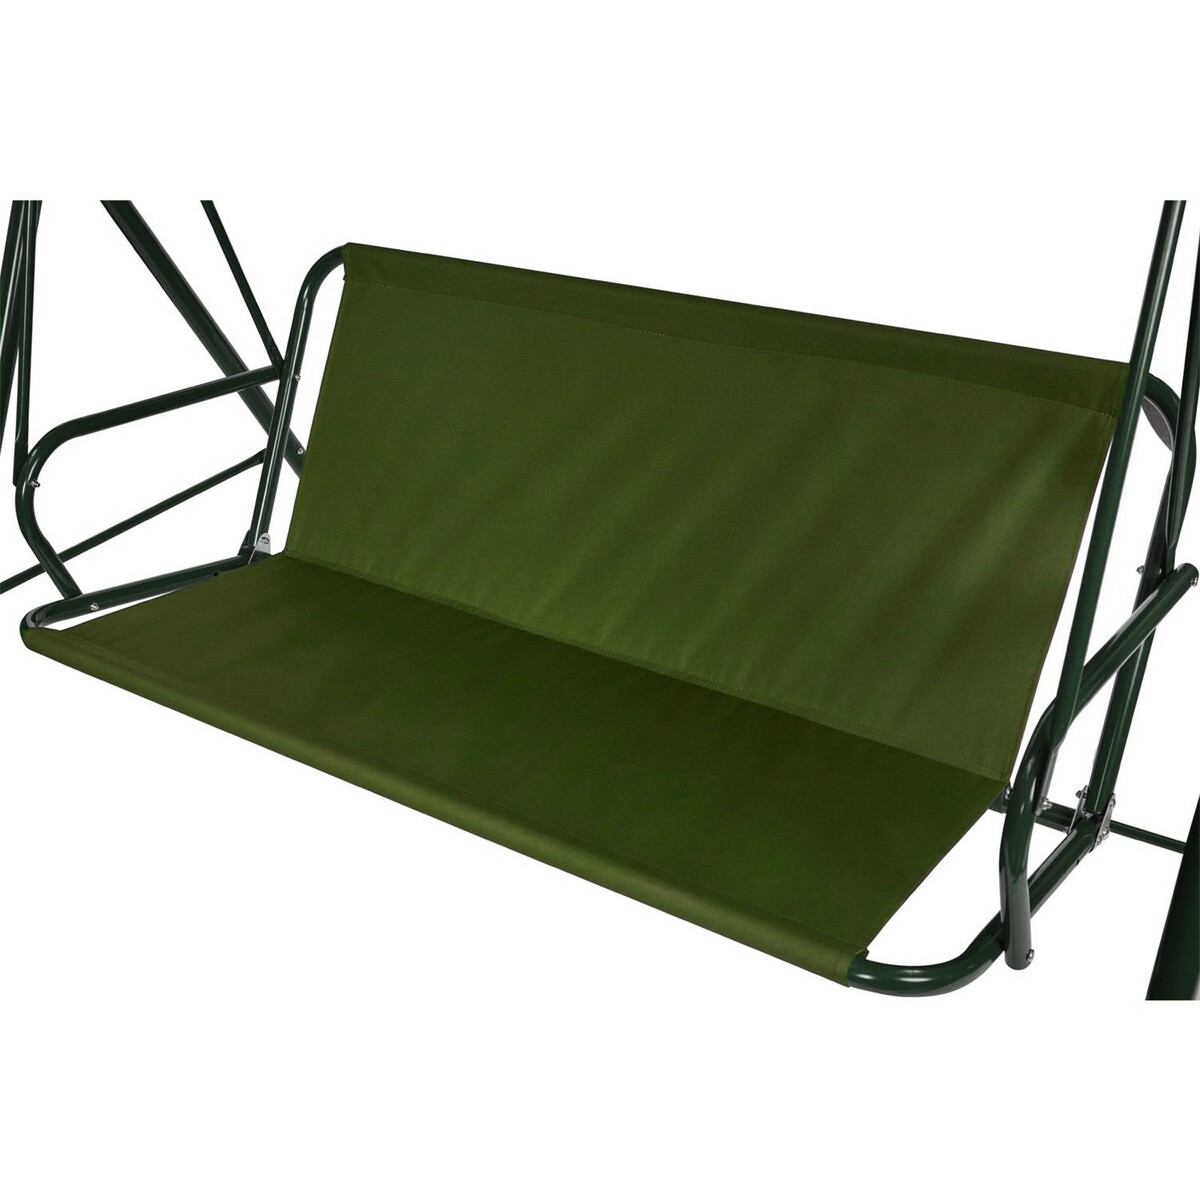 Усиленное тканевое сиденье для садовых качелей 110x50/45 см, оксфорд 600, олива No brand, цвет зеленый 02852690 - фото 1